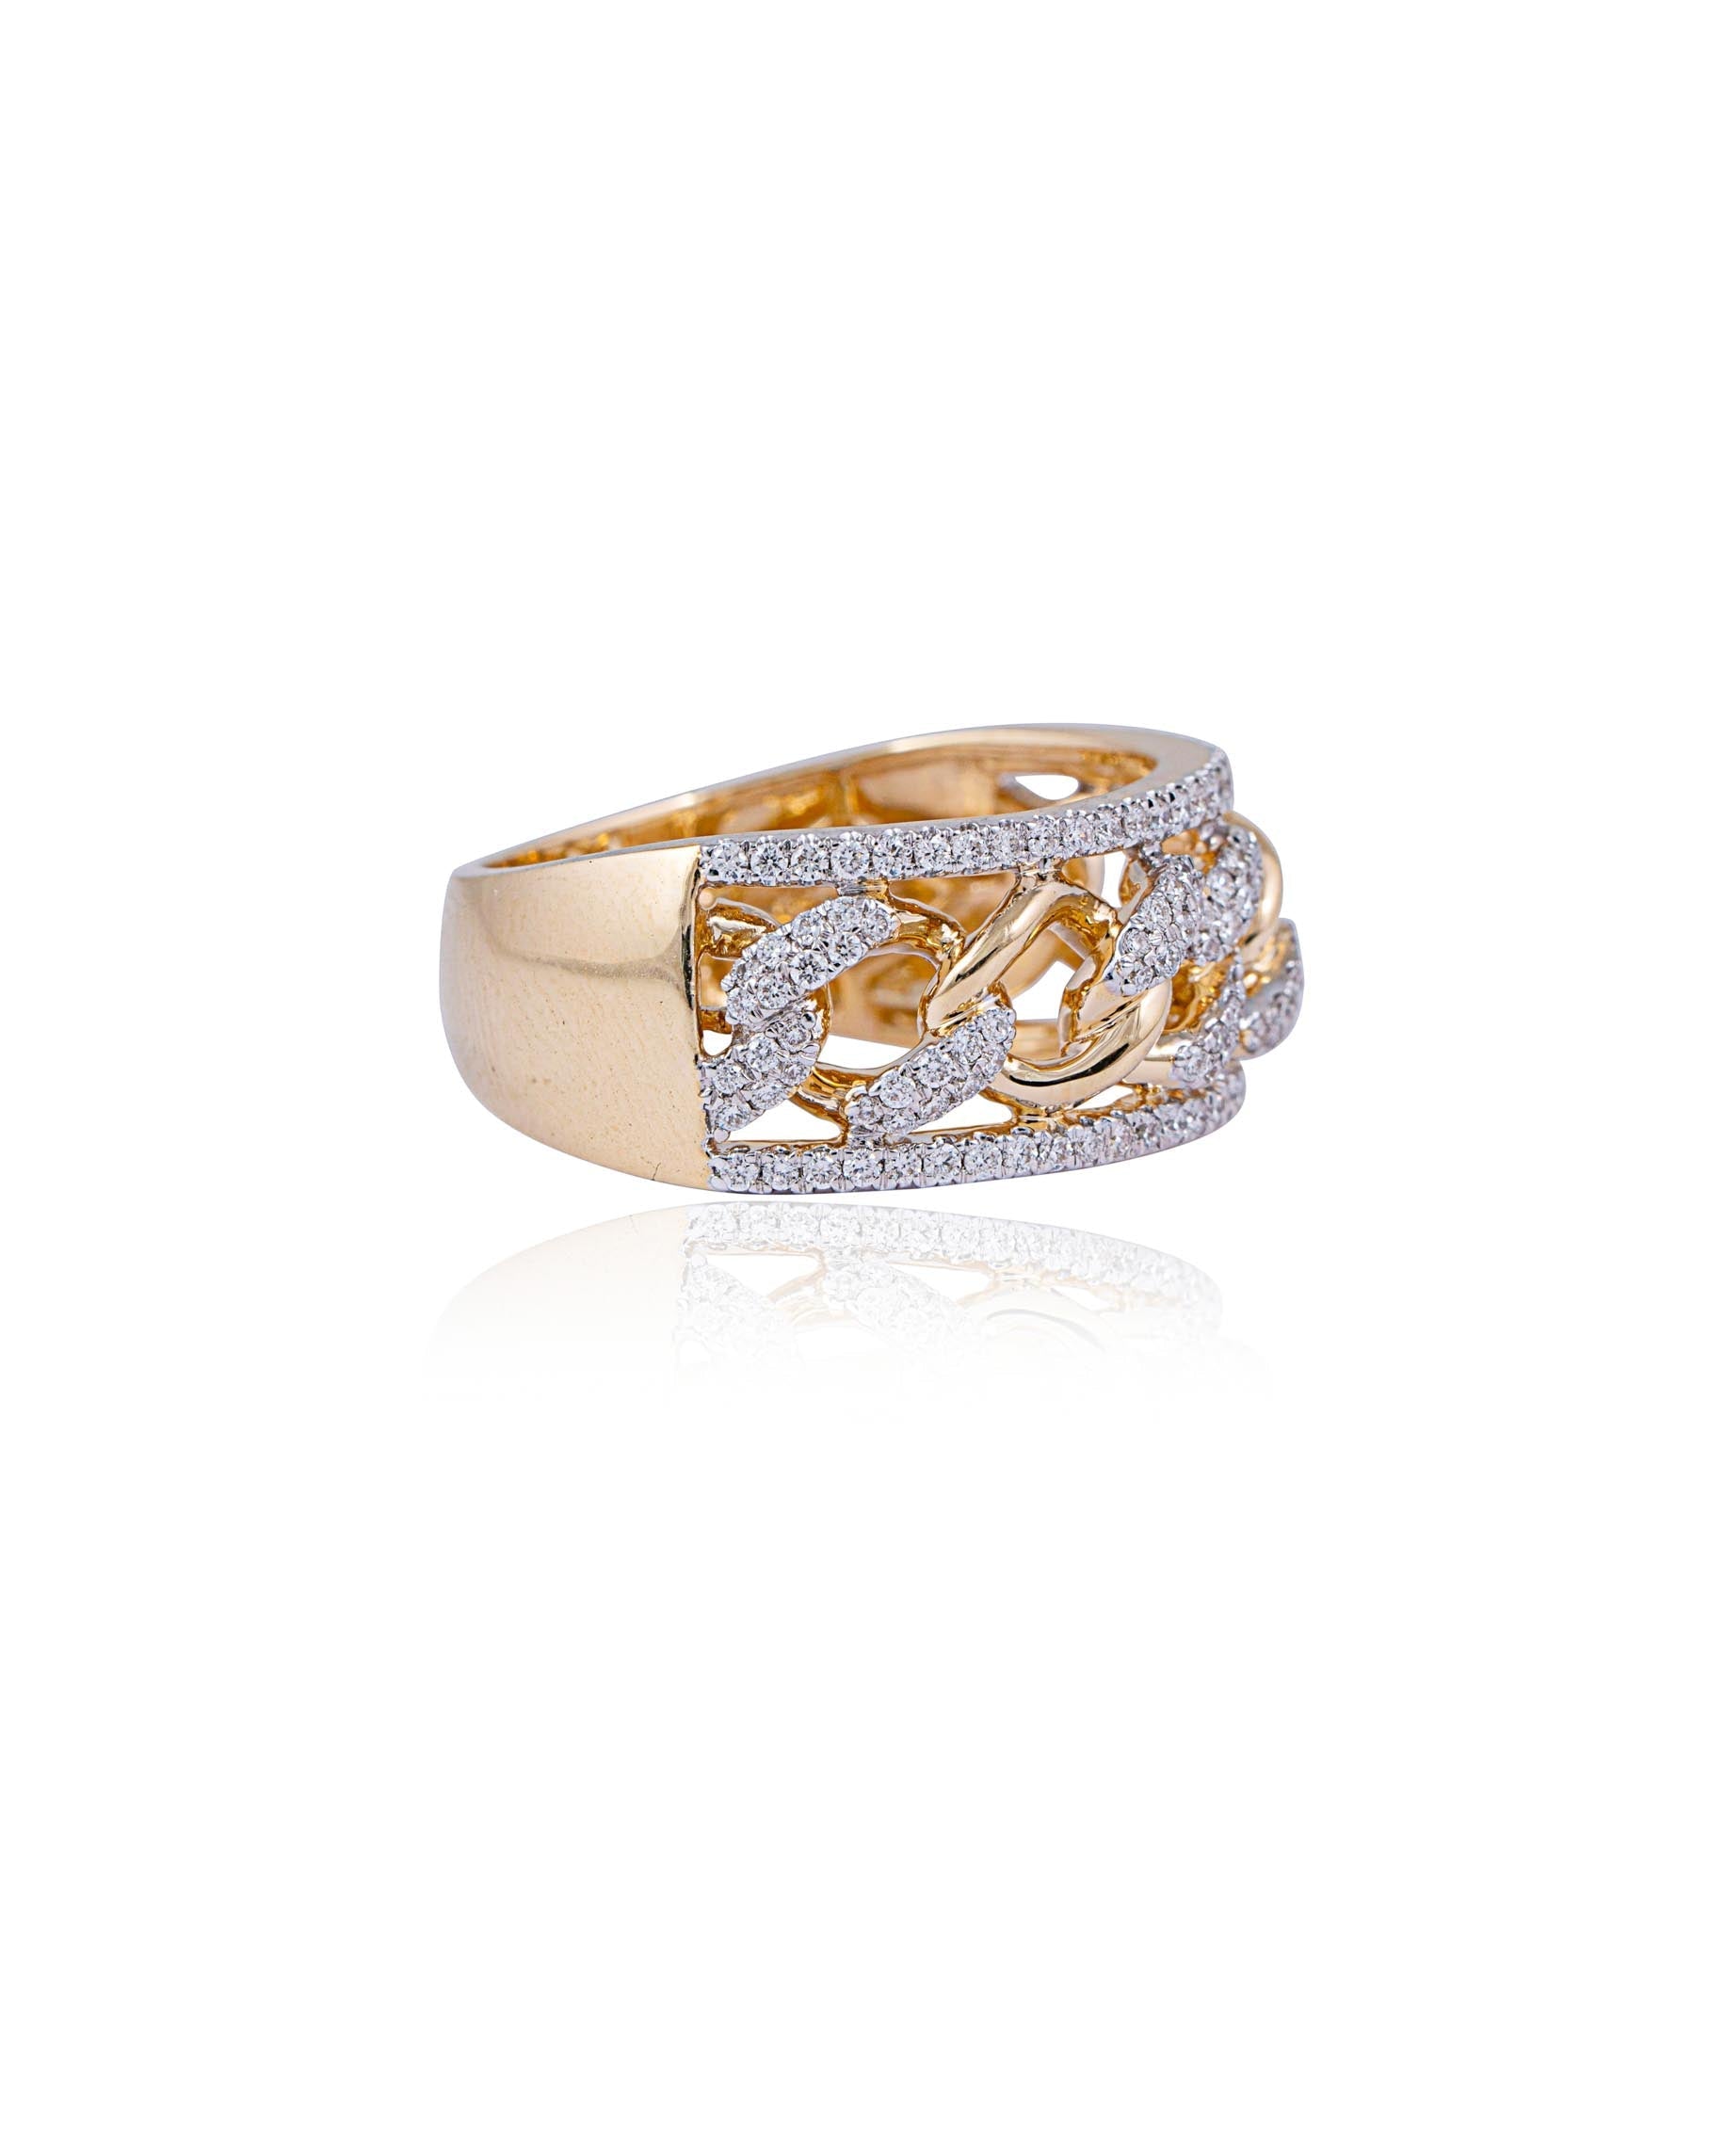 Flower Design Engagement Rings, Rose Gold Rings ADLR388